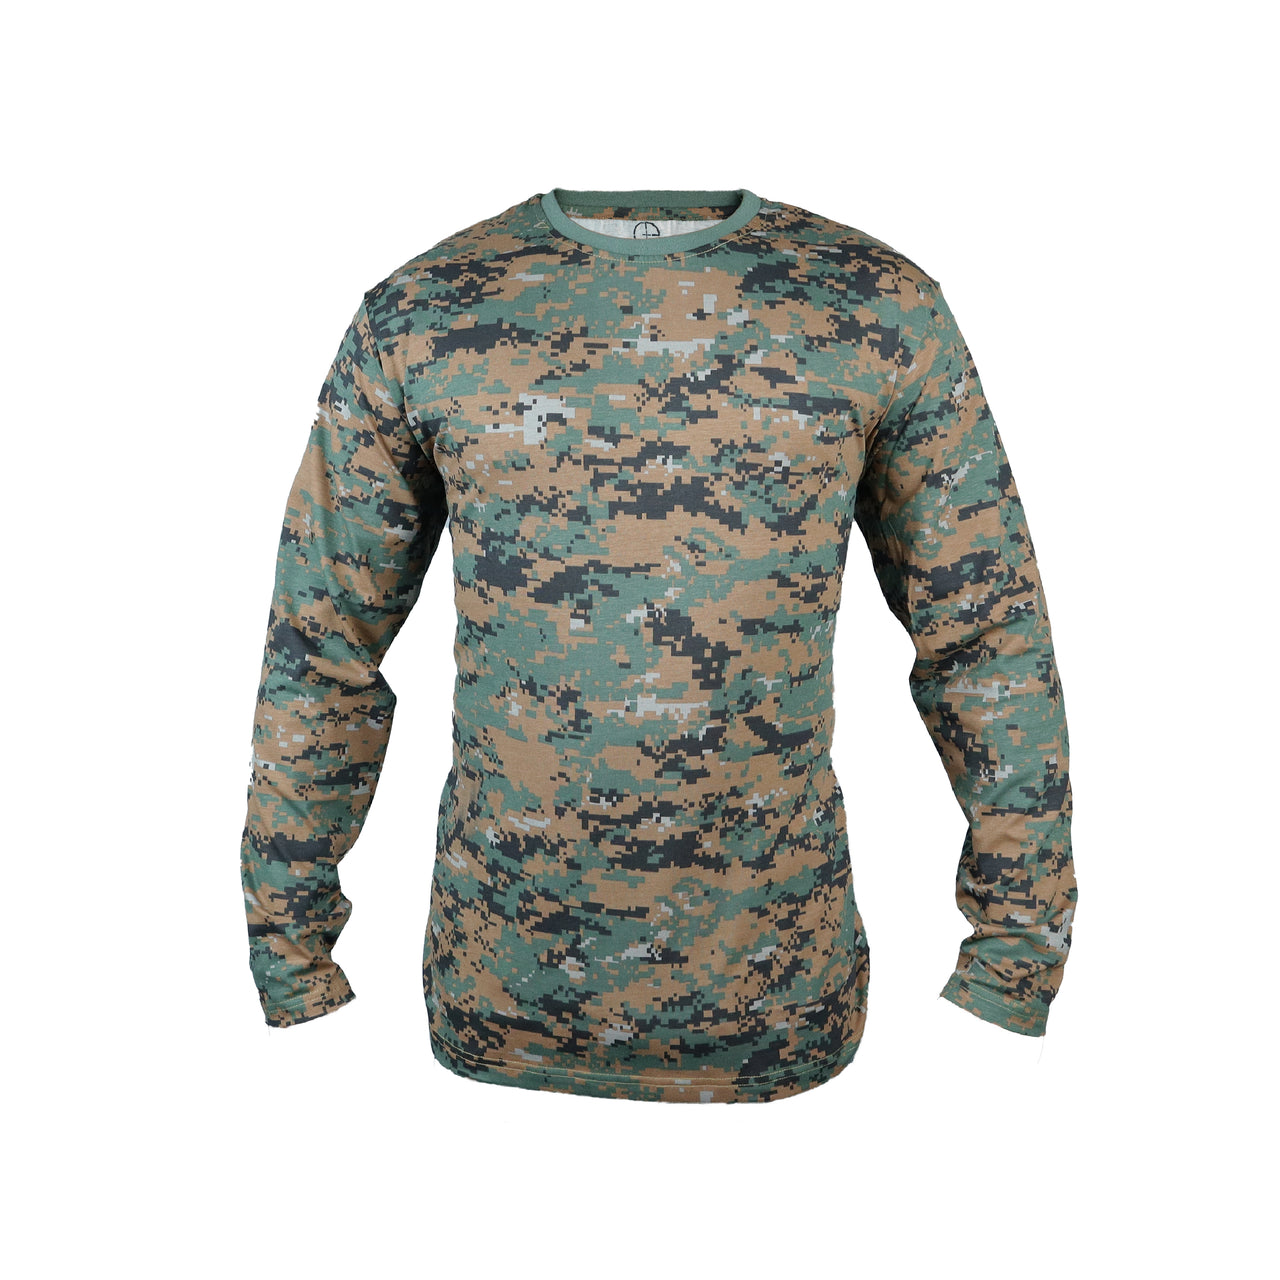 T-shirt-Woodland Digital Camouflage-Full Sleeve